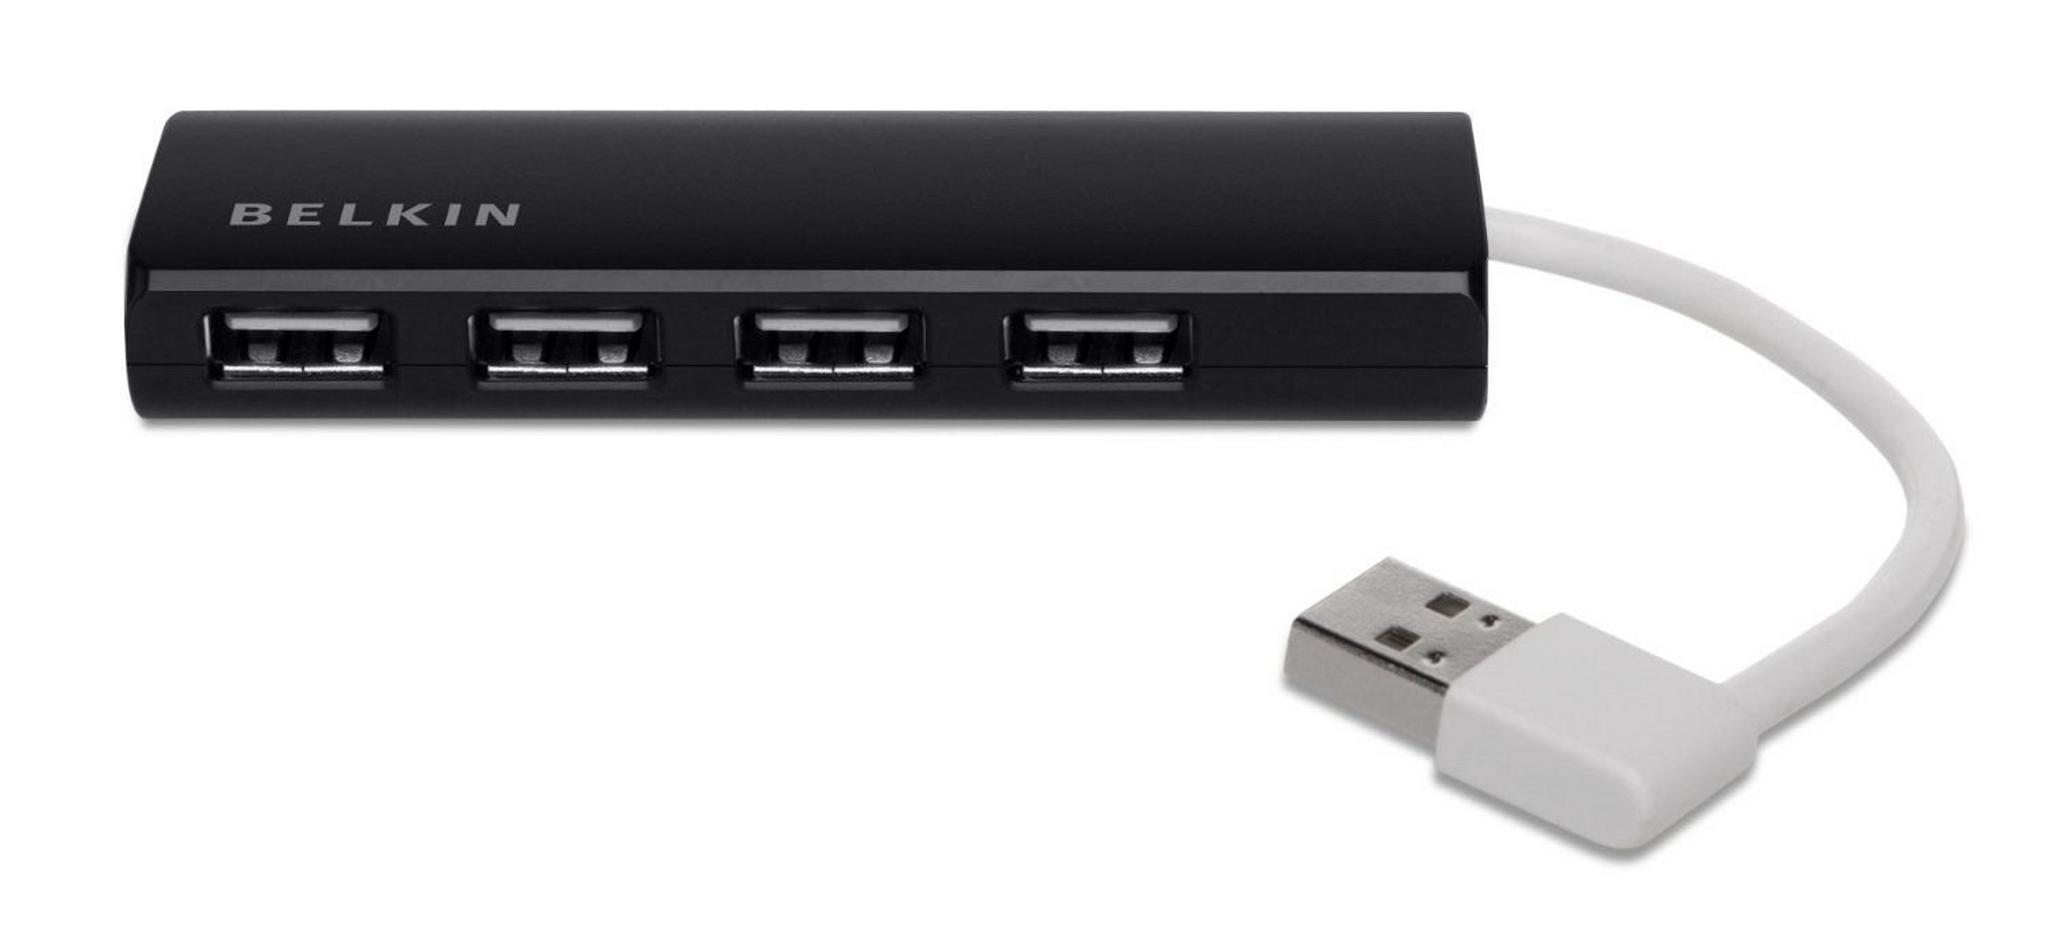 Belkin 4 Port USB 2.0 Hub Ultra-Slim Series - Black F4U042BT